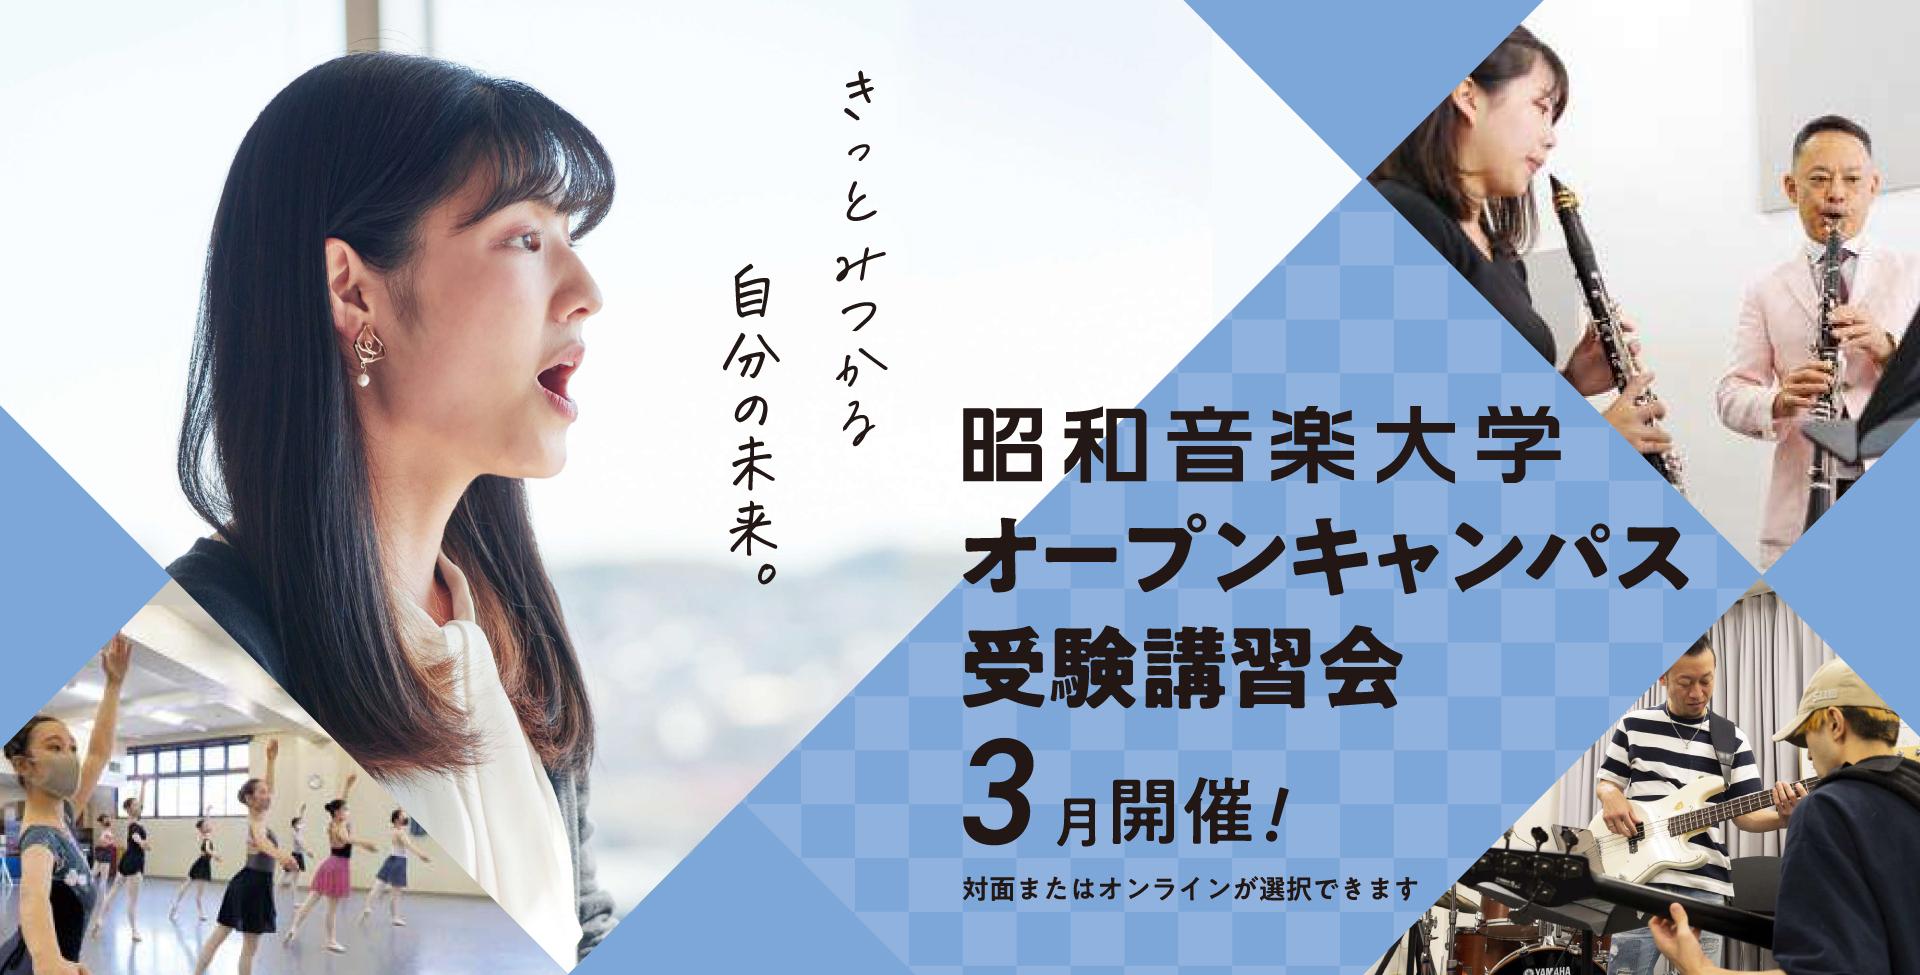 昭和音楽大学 オープンキャンパス・受験講習会 6-7月開催！ 対面またはオンラインが選択できます